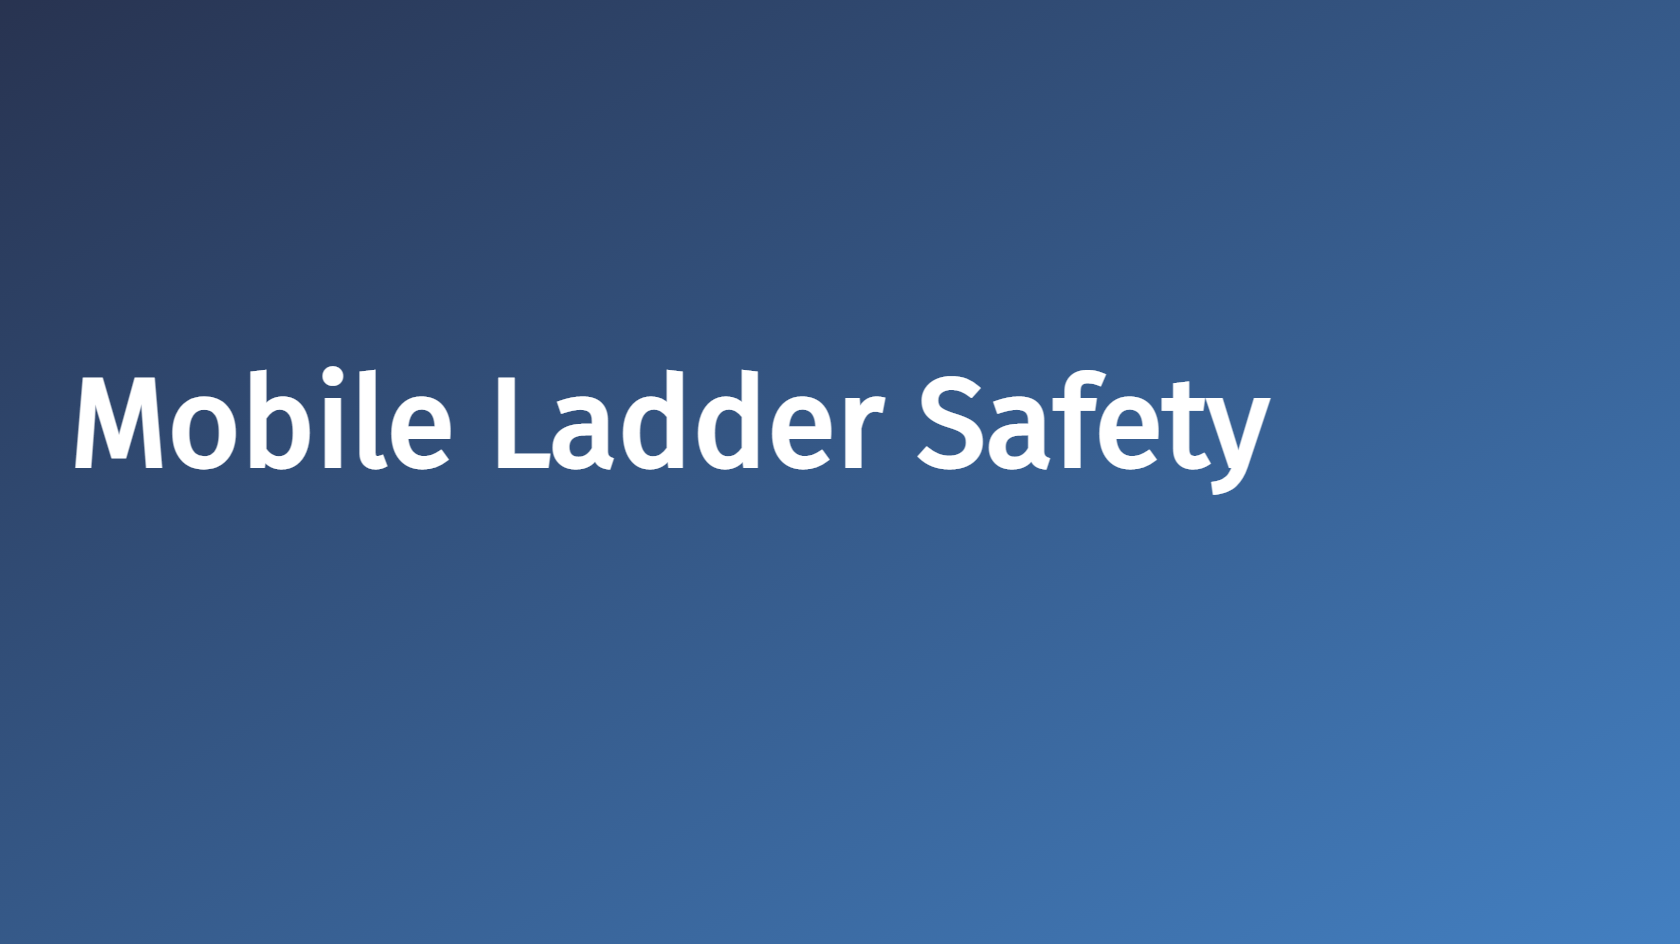 Mobile Ladder Safety